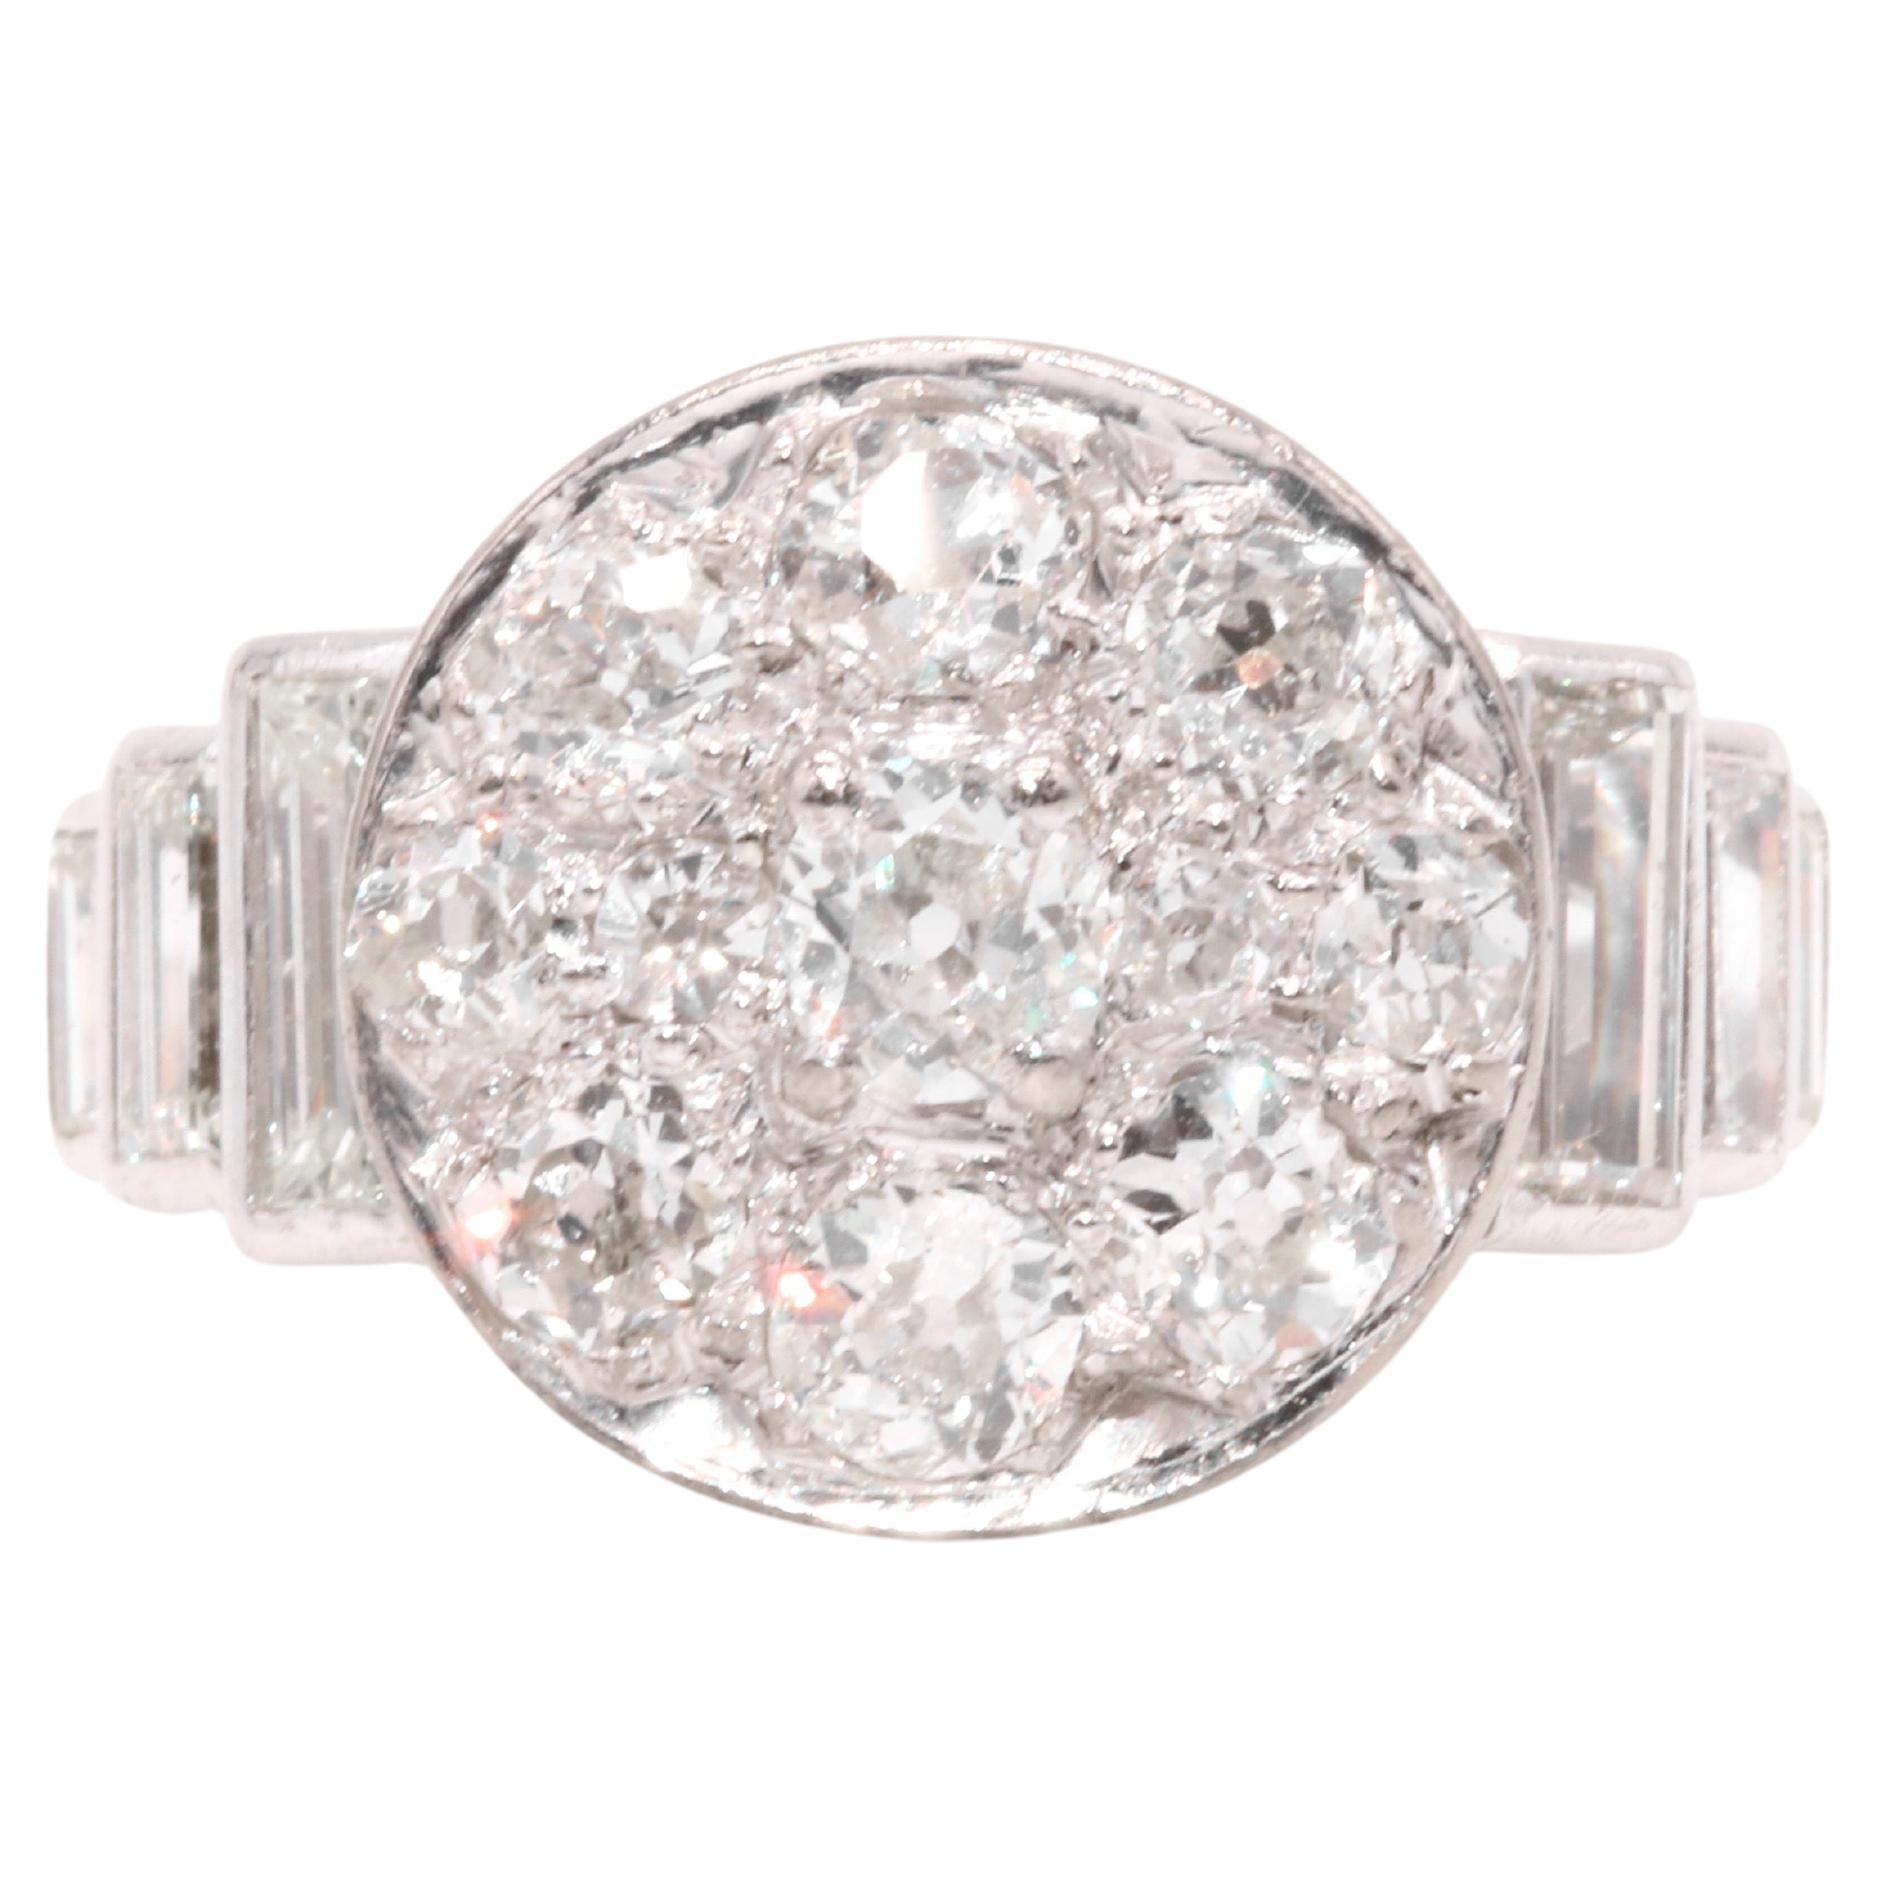 Art Deco 1930s Platinum 2.44ctw Old Cut Diamond Ring with Baguette Cut Shoulders For Sale